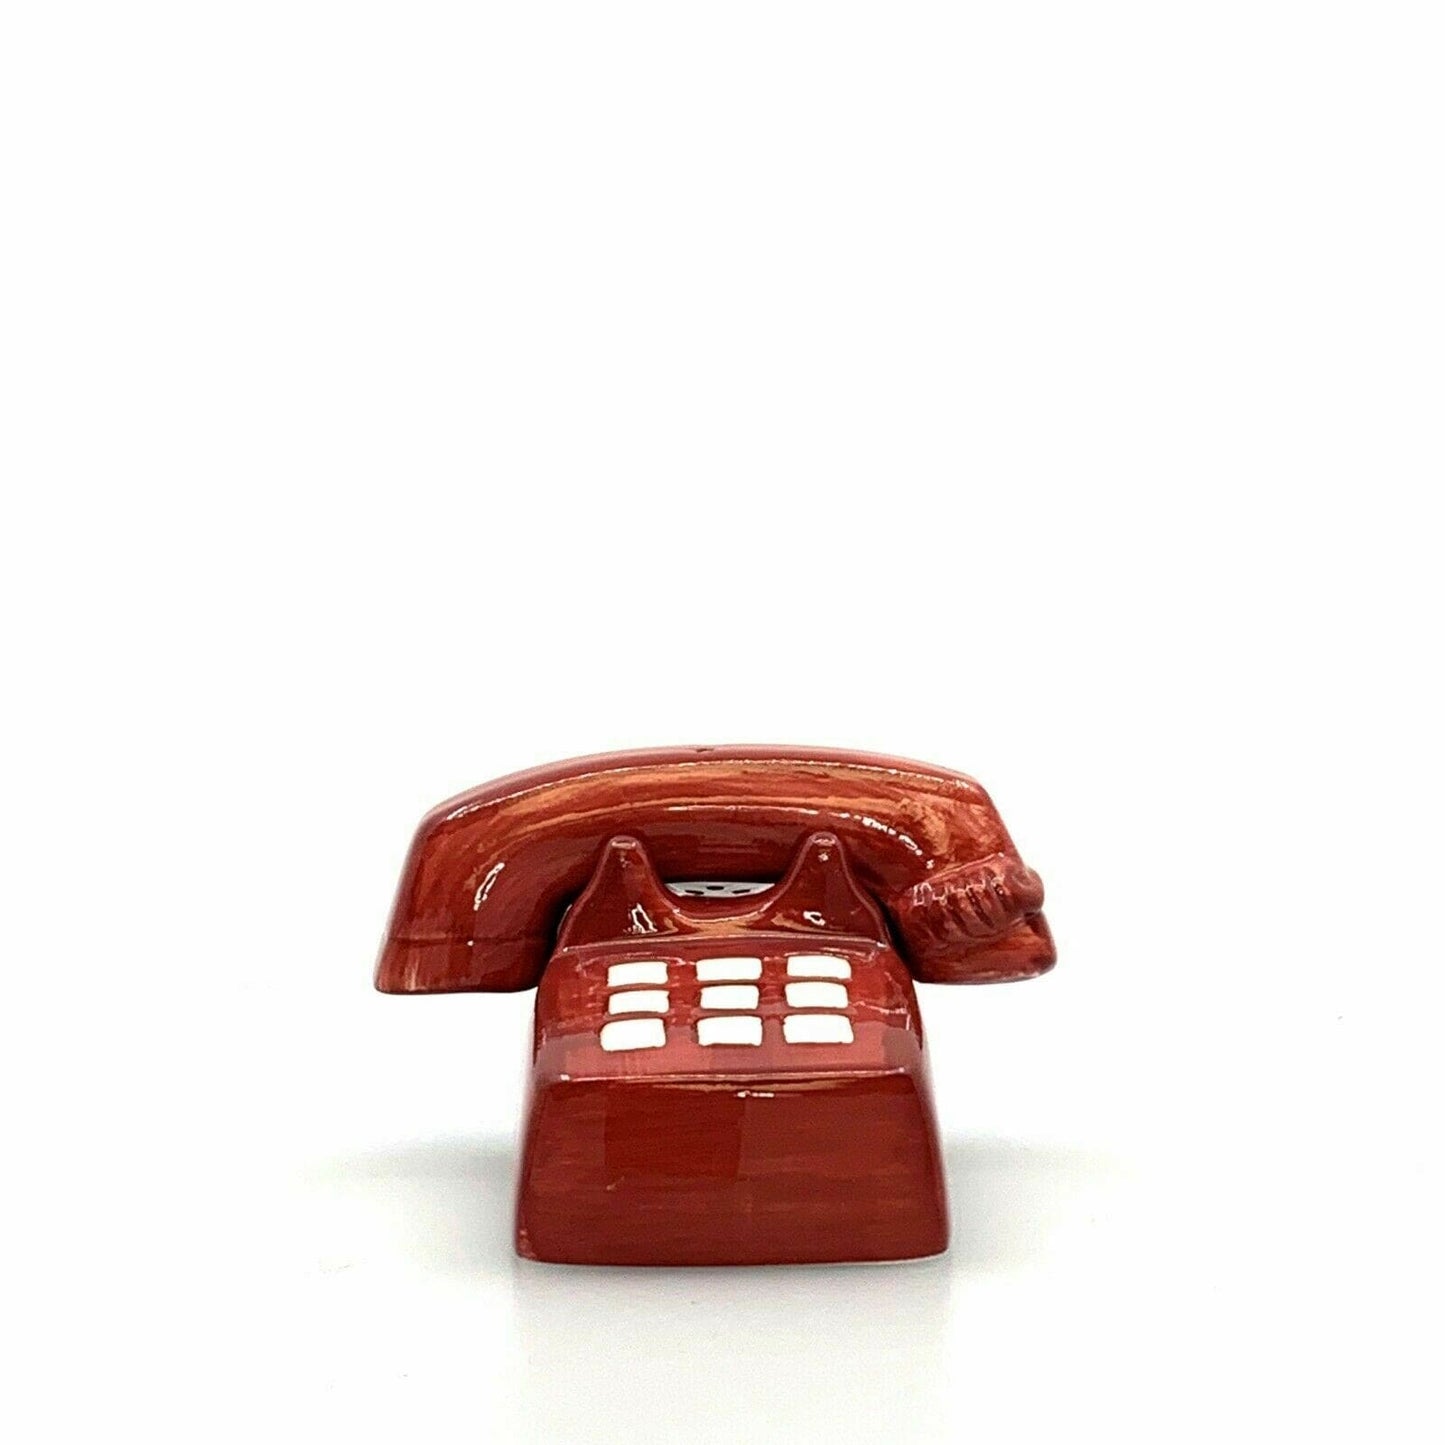 SAKURA VINTAGE RED TELEPHONE SALT & PEPPER SHAKER SET